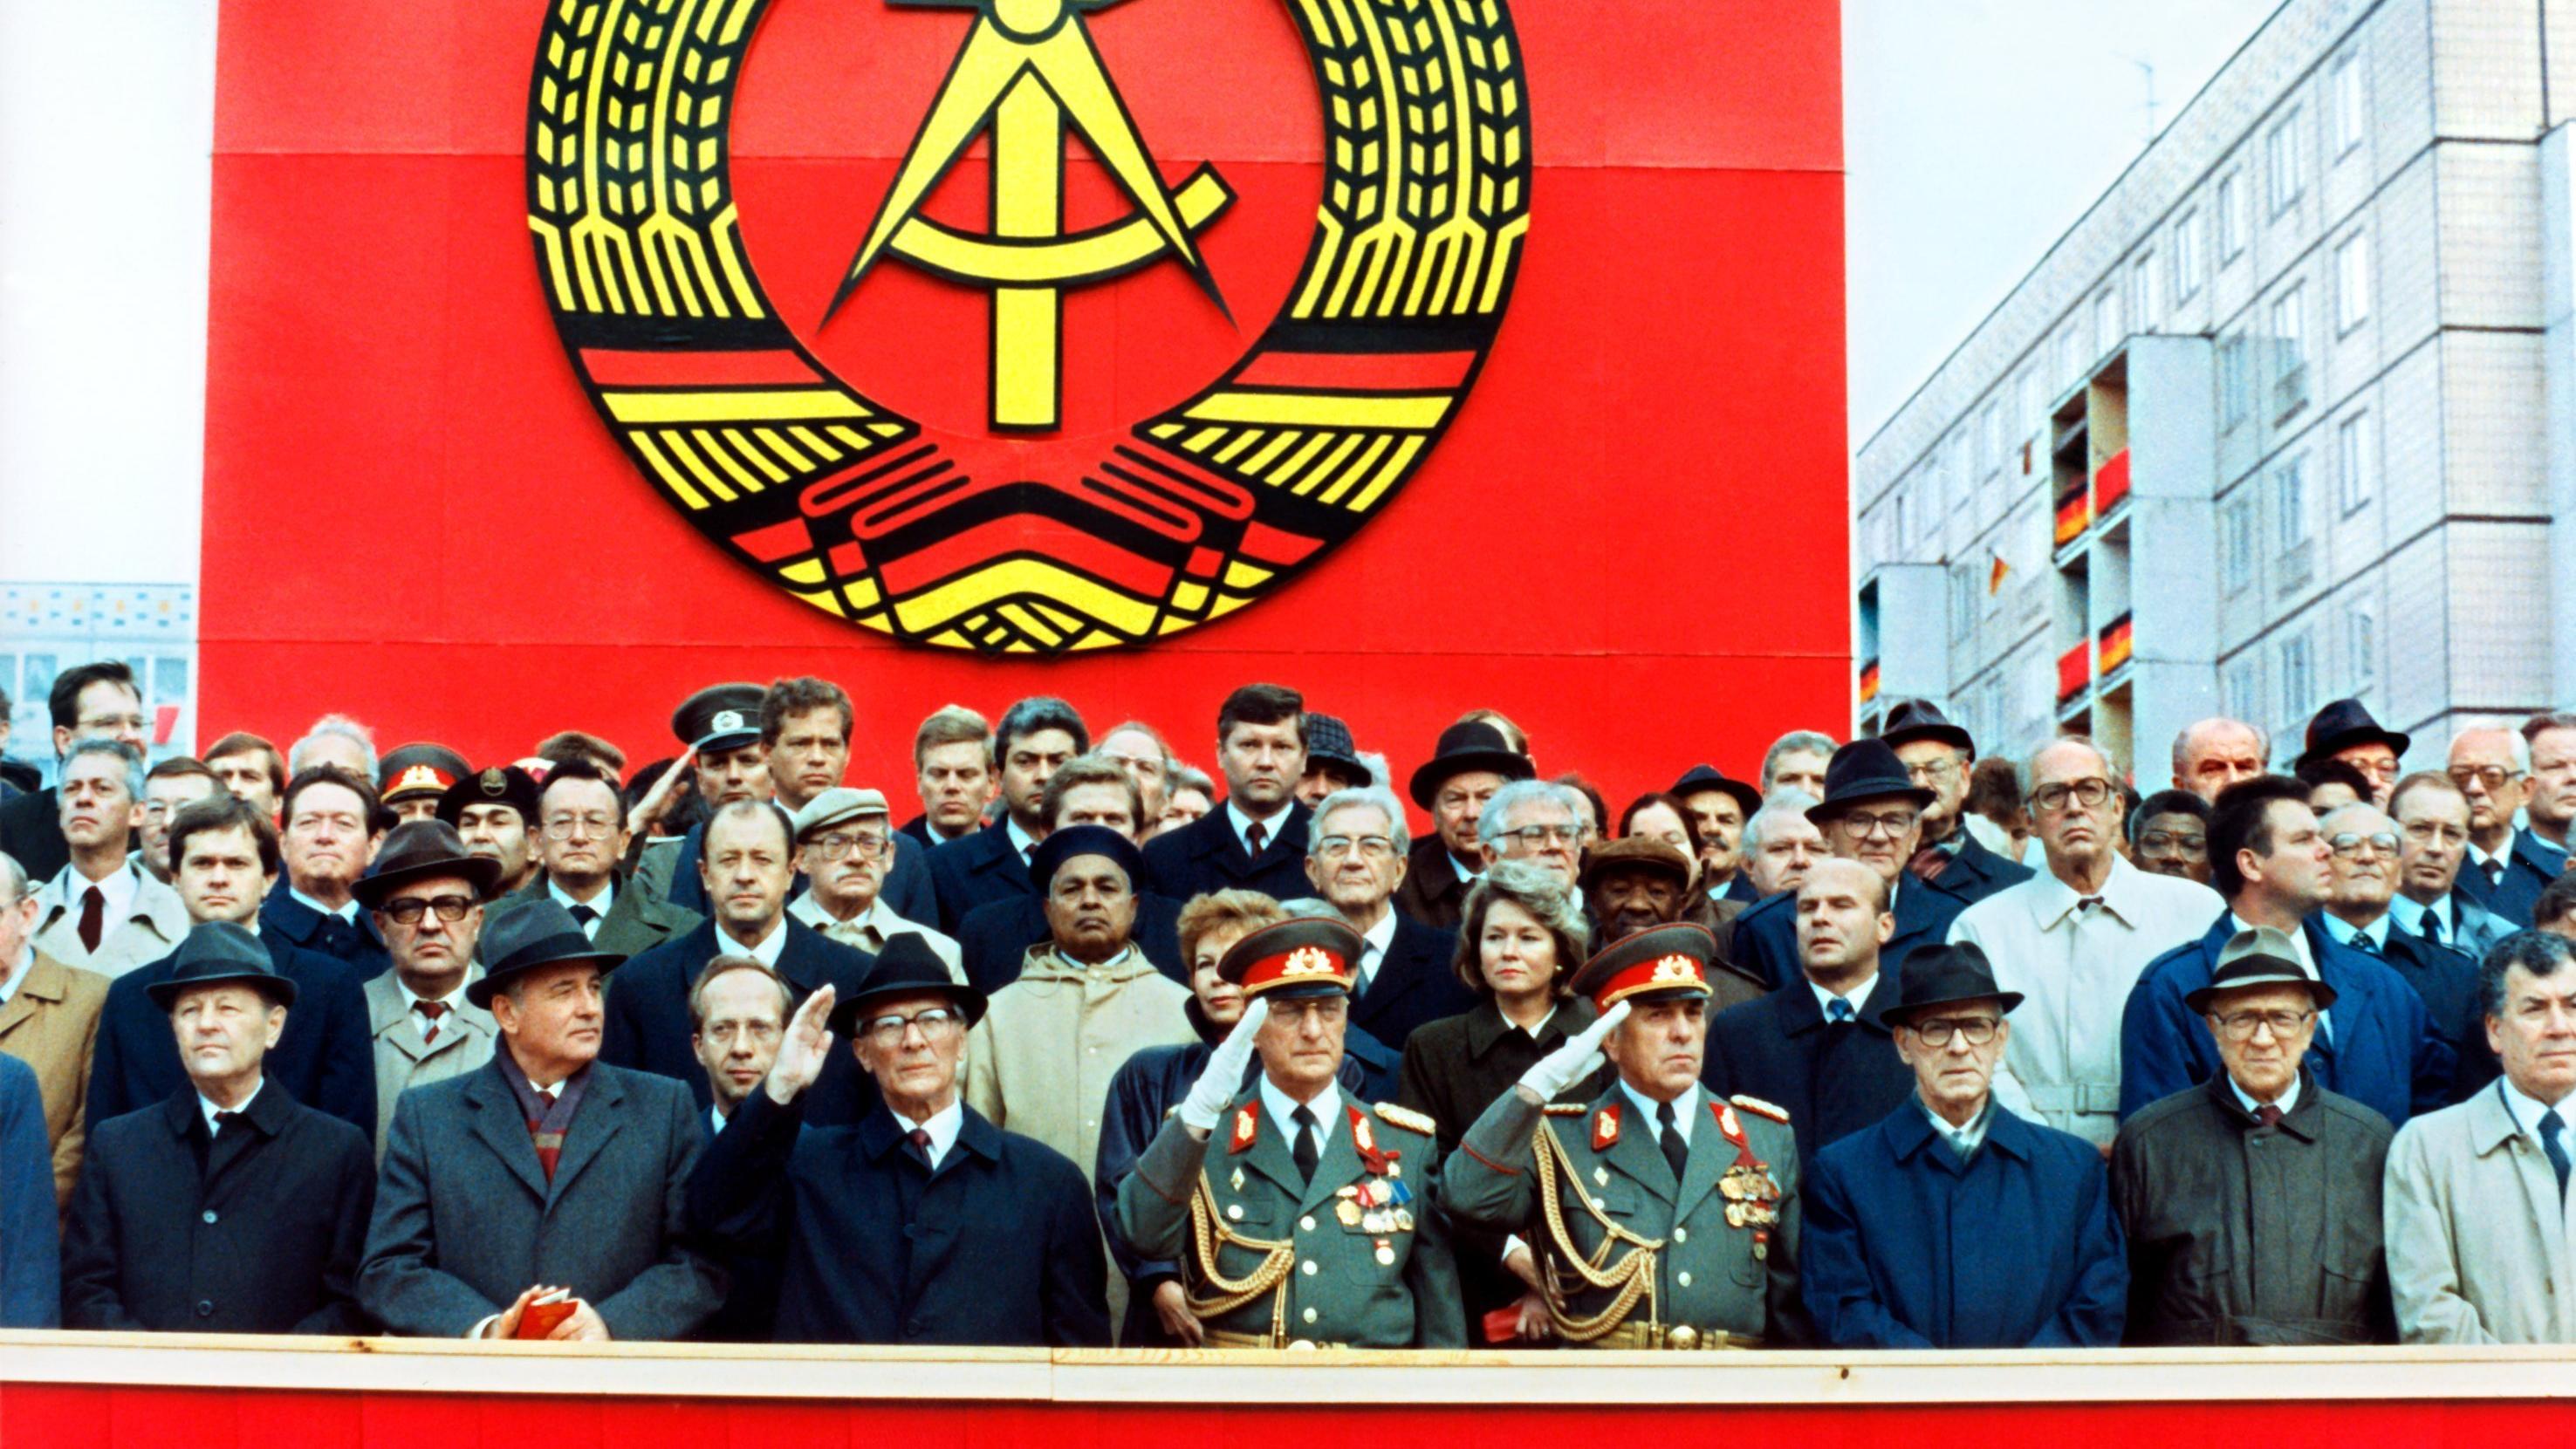 ARCHIV - 07.10.1989, DDR, Berlin: Die Ehrentribüne auf der Karl-Marx-Allee während der Militärparade am 7. Oktober 1989 in Ost-Berlin mit dem sowjetischen Staats- und Parteichef Michail Gorbatschow (2.v.l.), dem DDR-Staatsratsvorsitzenden und SED-Gen